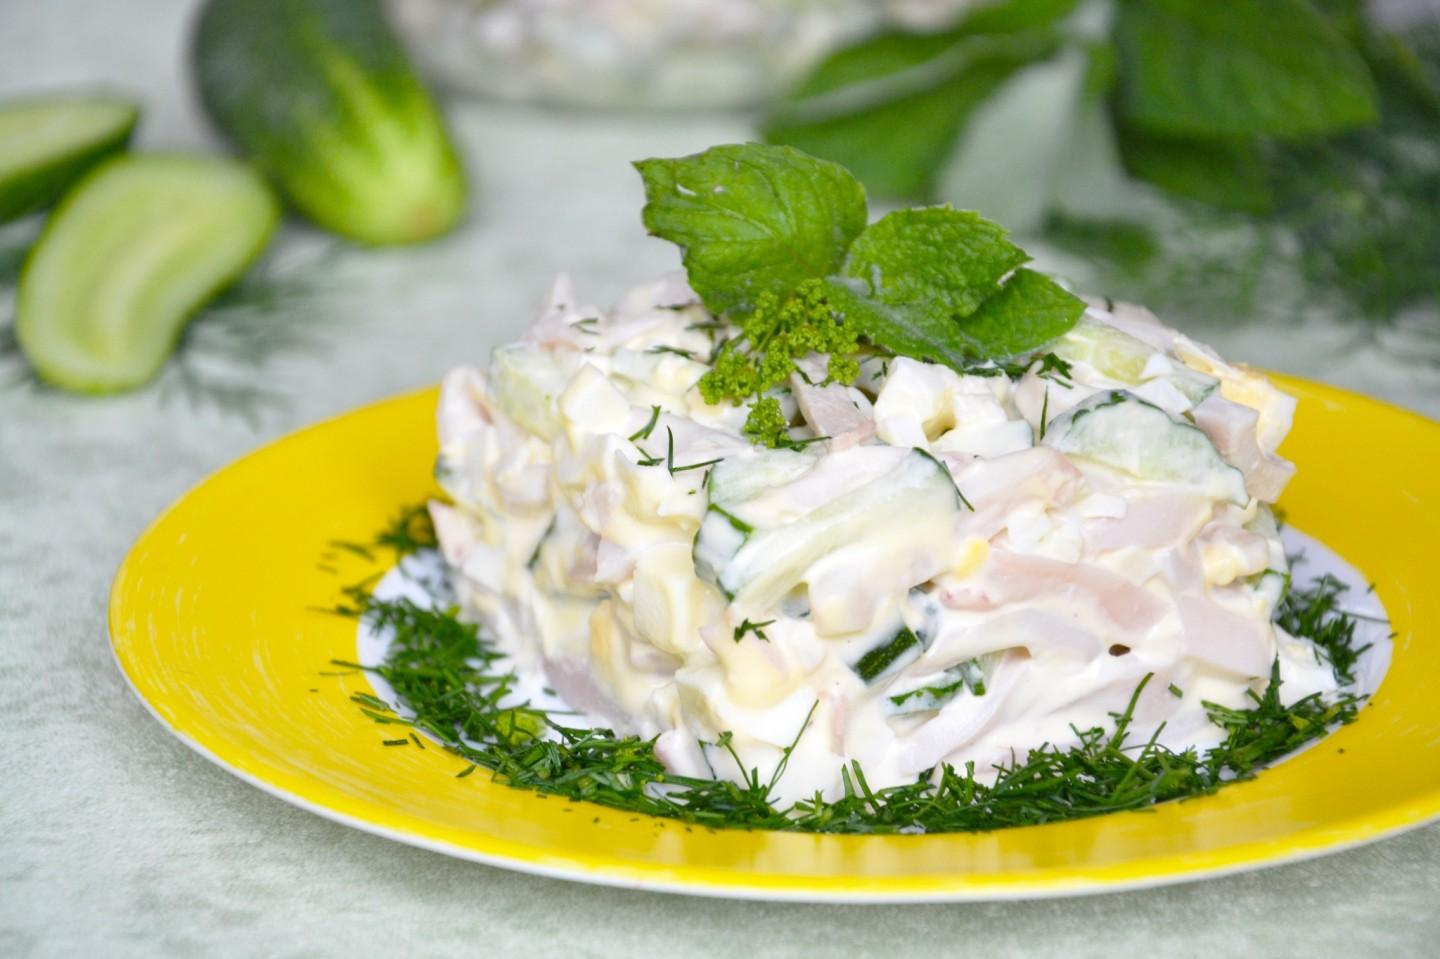 Список ингредиентов для приготовления простого салата из сырого кальмара и болгарского перца